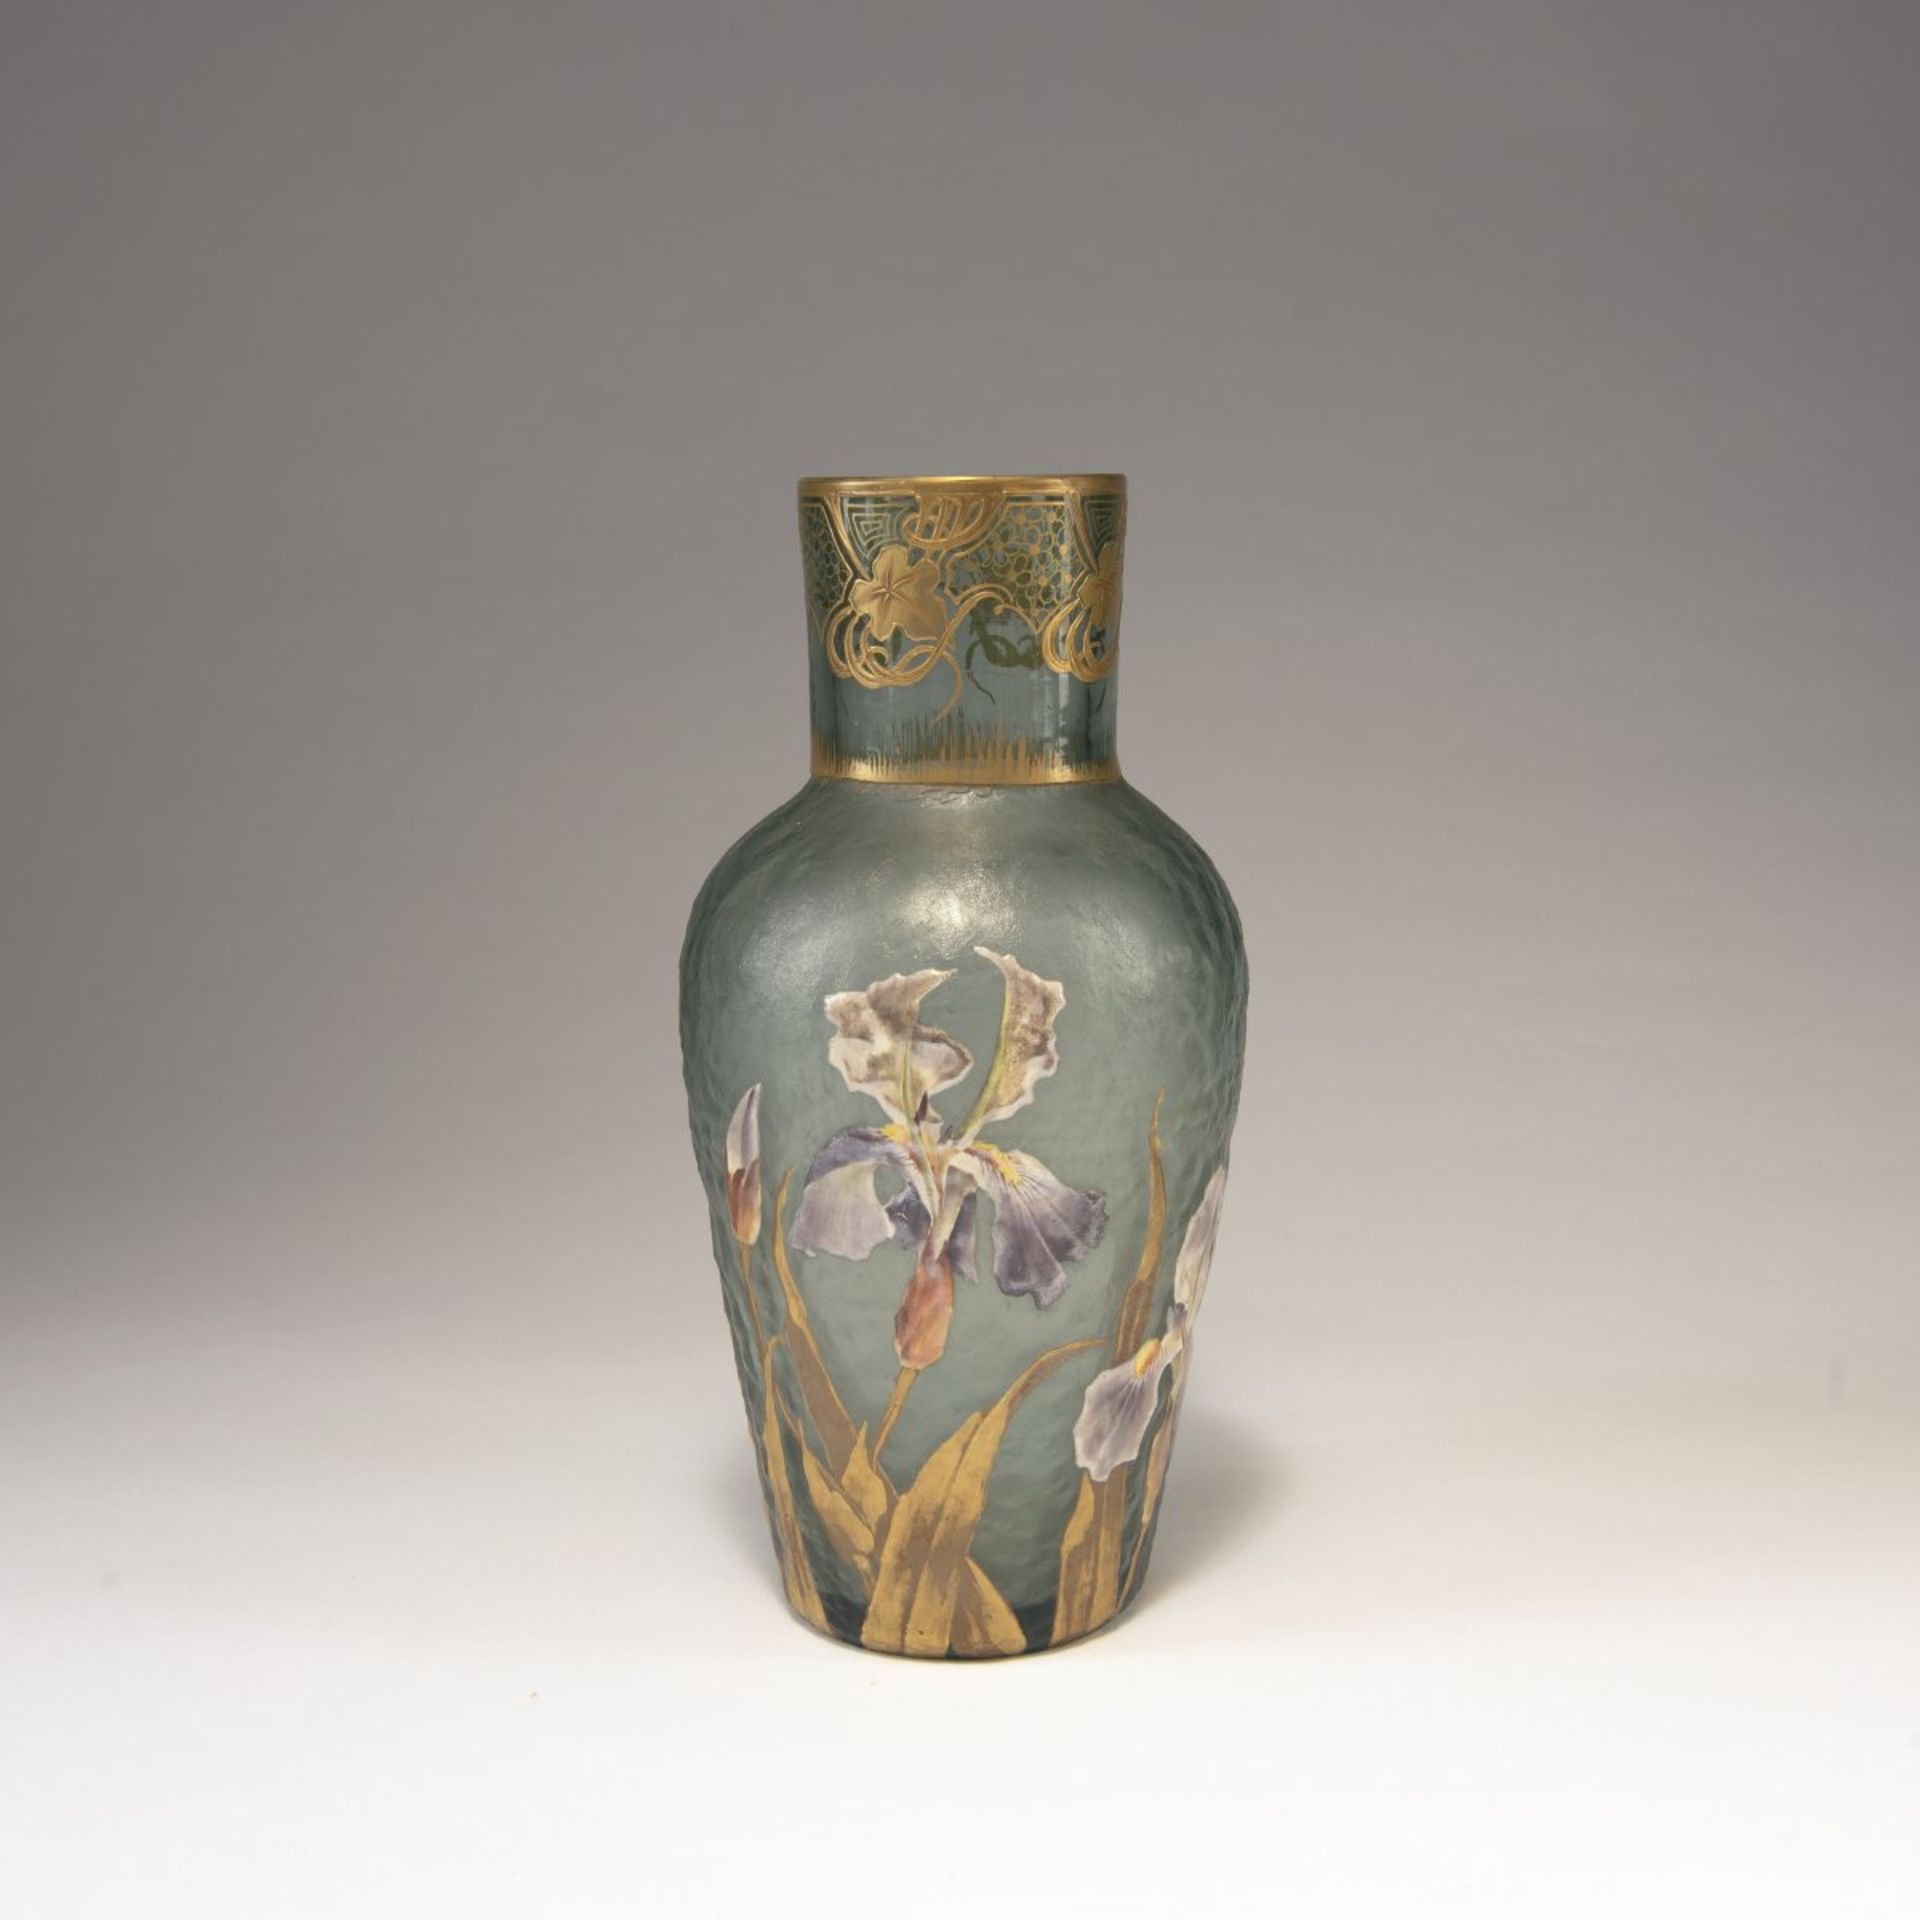 Legras & Cie., Saint-Denis, Vase 'Iris', c. 1900